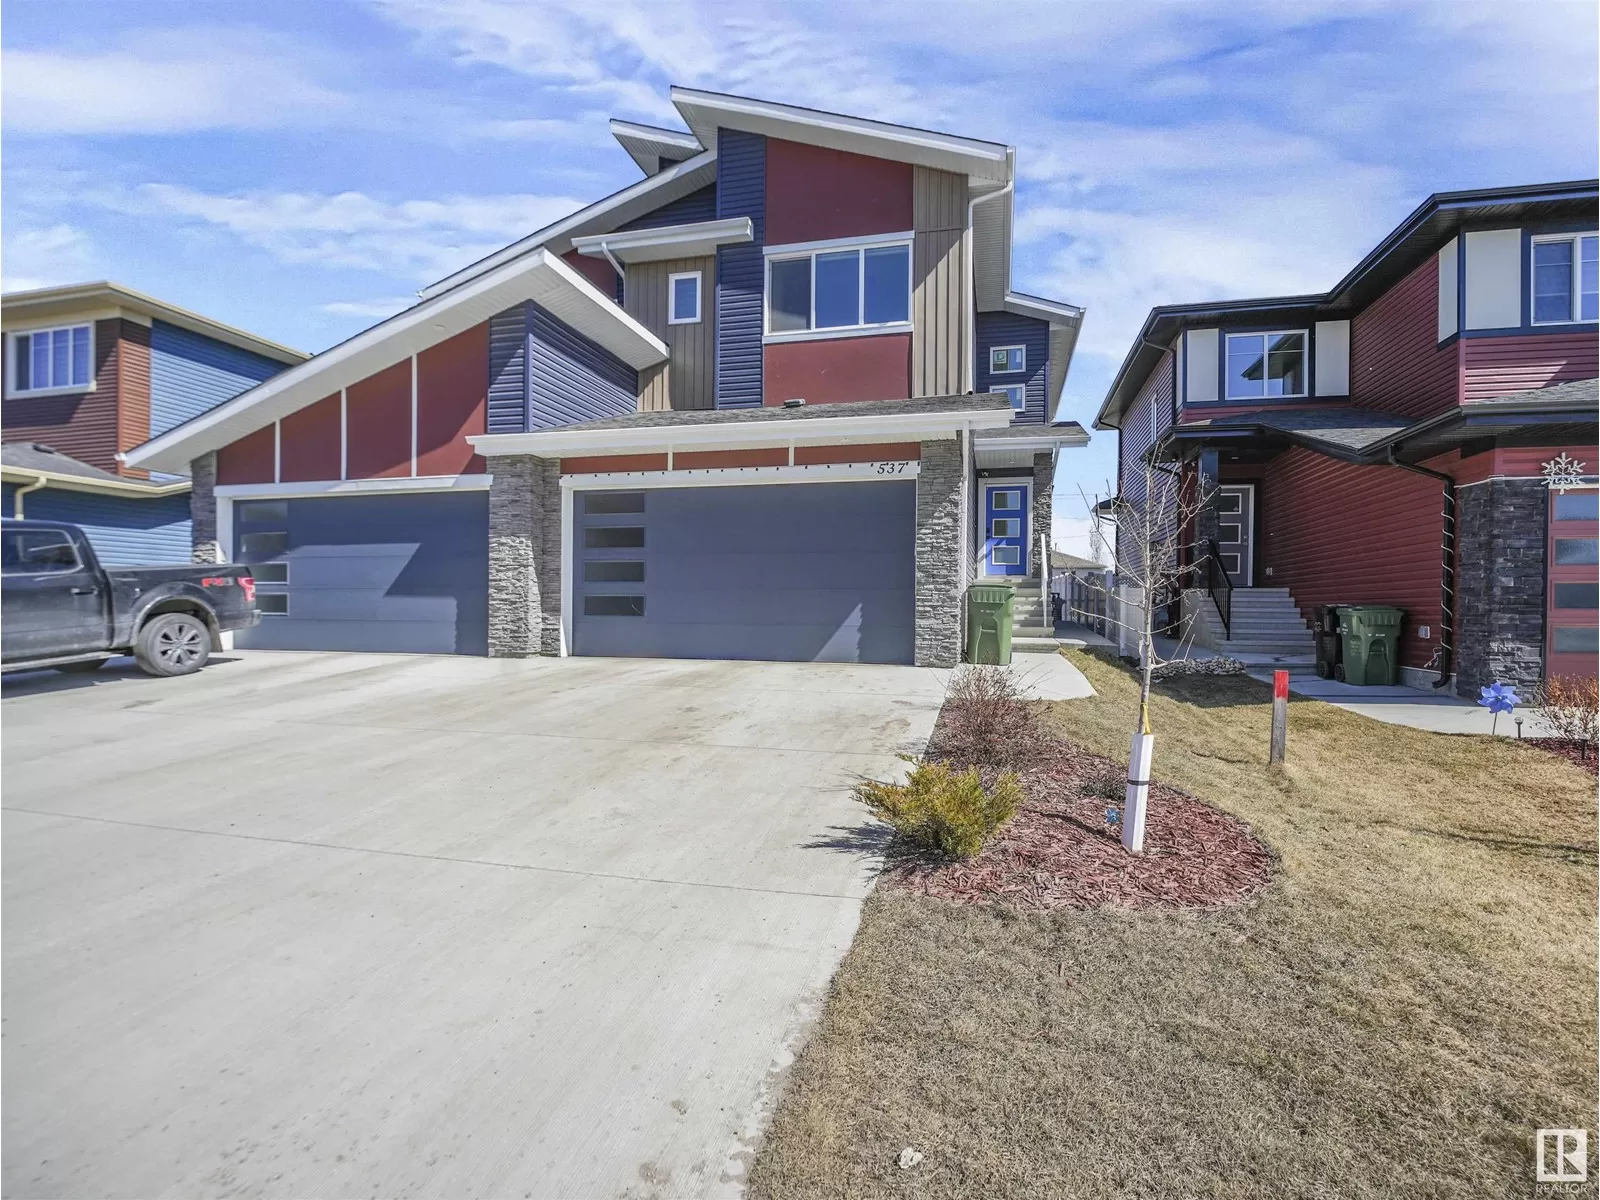 Duplex for rent: 537 Kleins Cr, Leduc, Alberta T9E 1M5